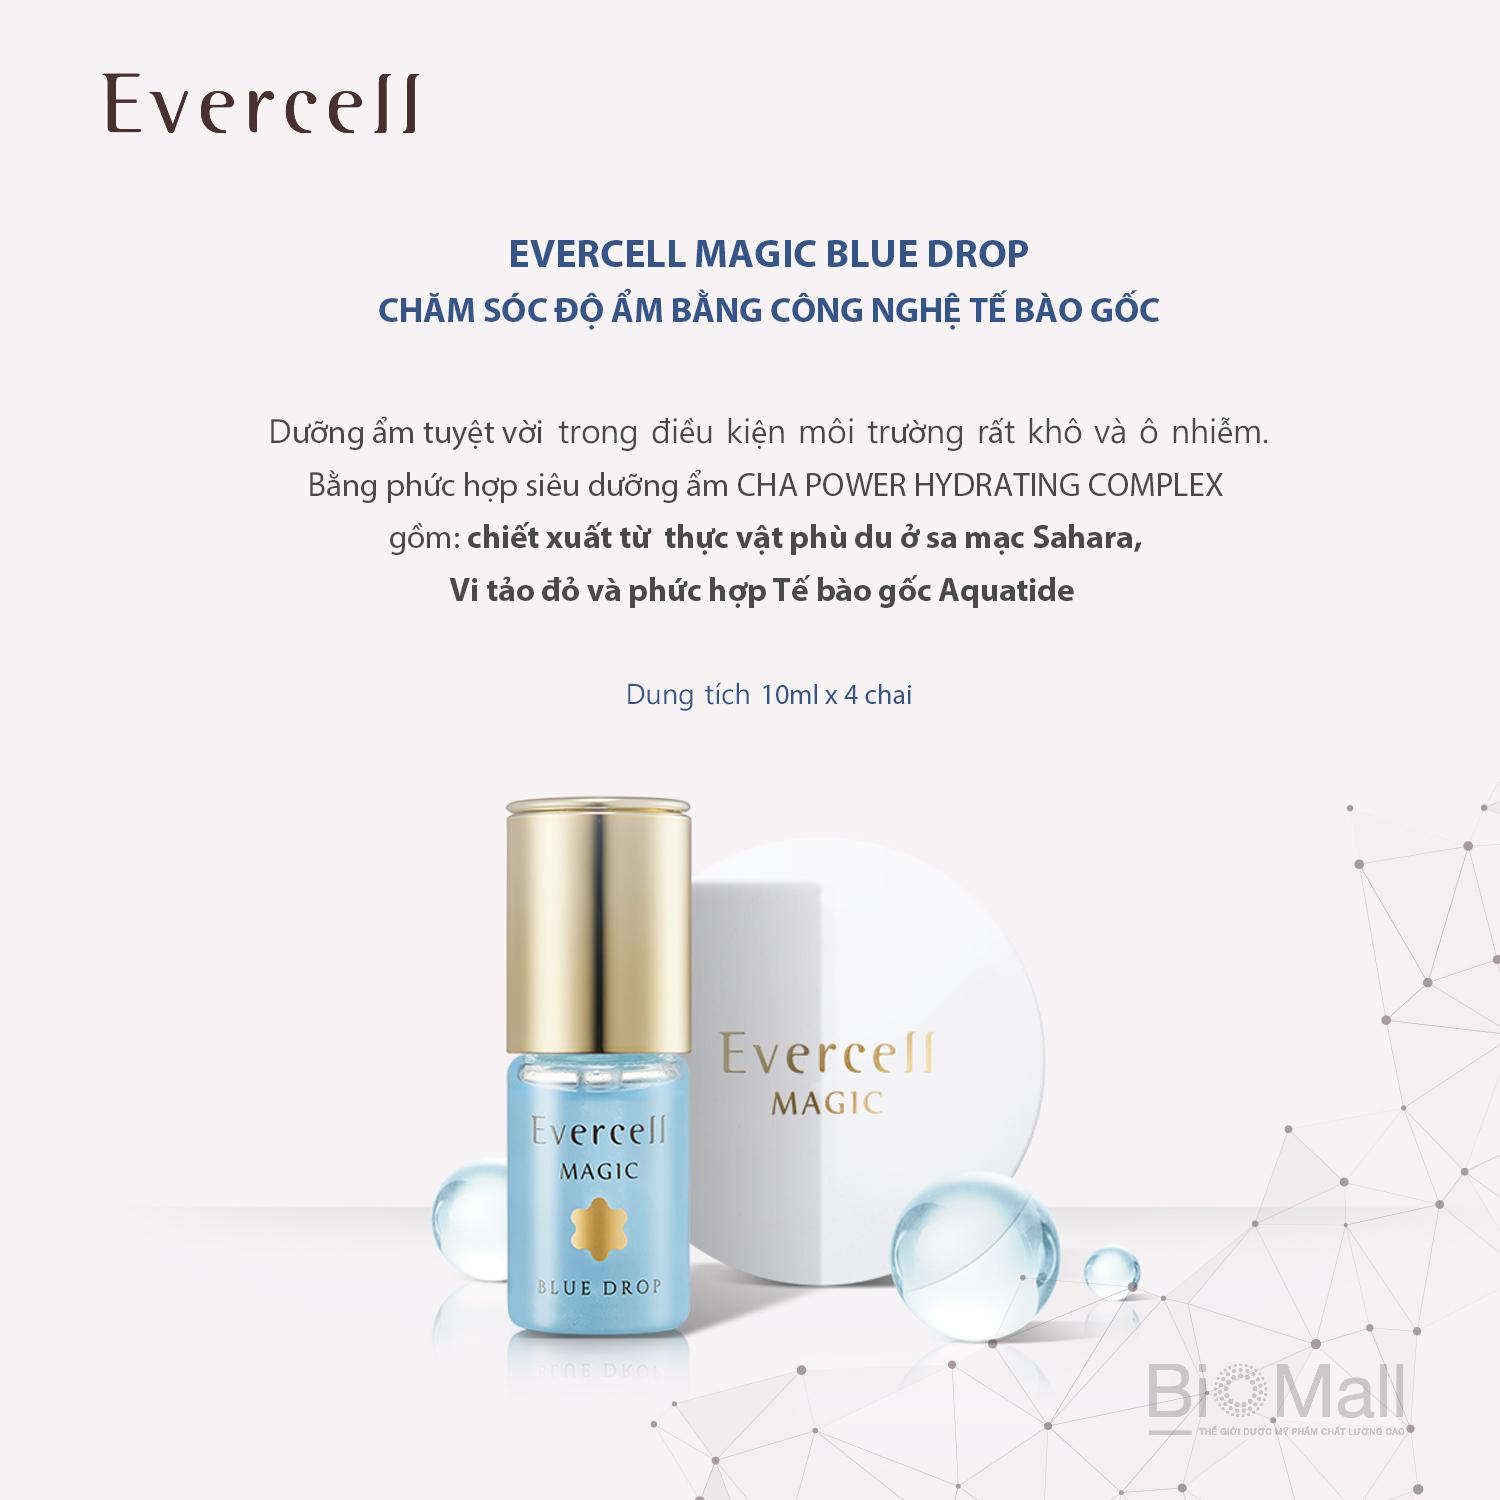 Evercell Magic Blue Drop 4 chai x 10 ml